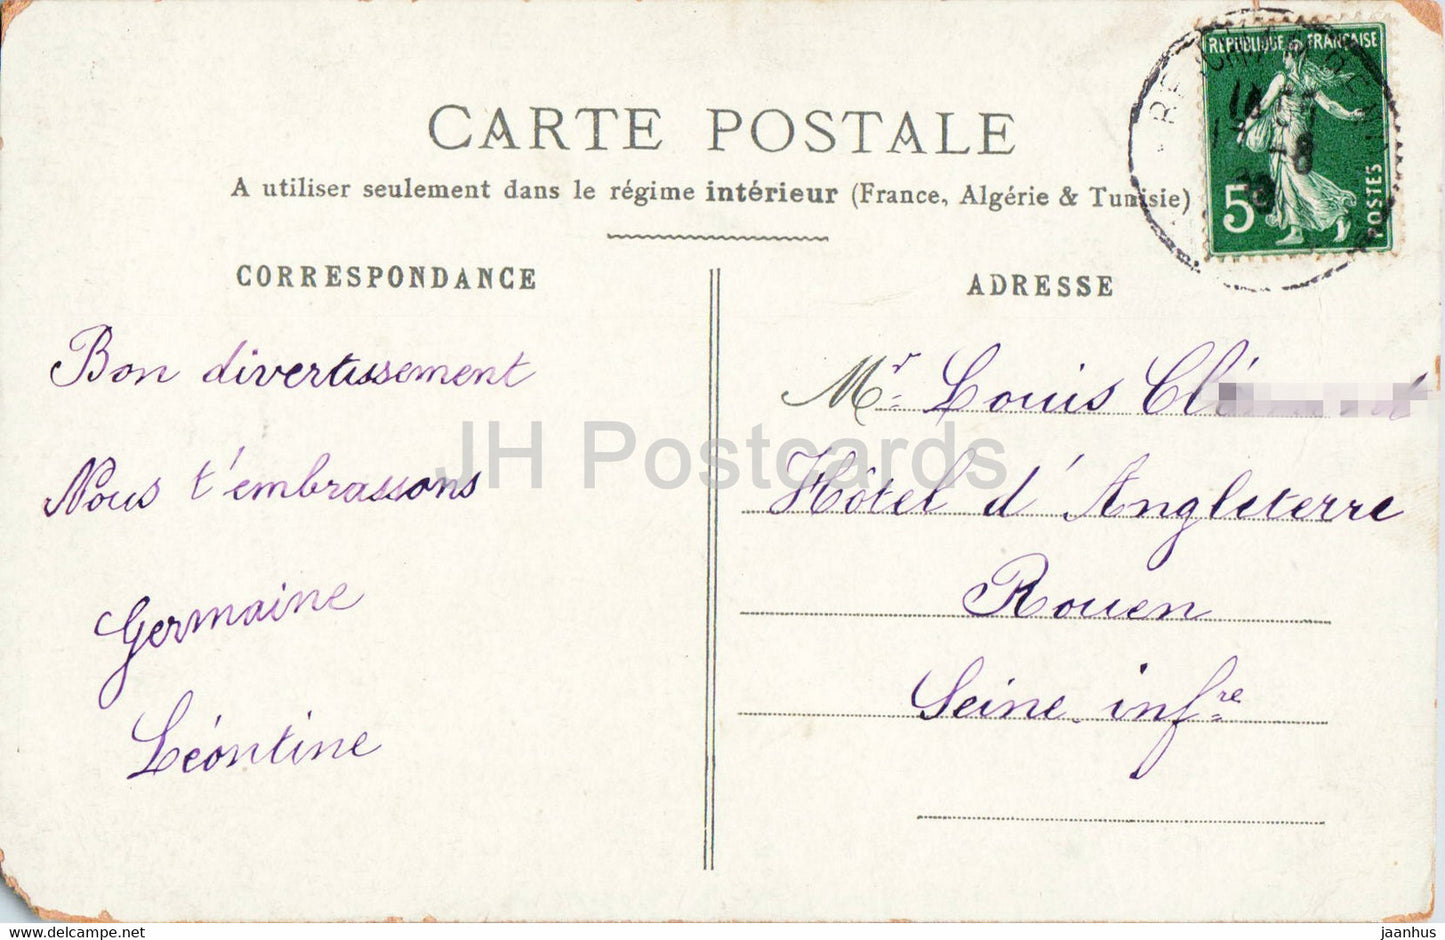 Illustration - Soldat und Frau - Militär - alte Postkarte - Frankreich - gebraucht